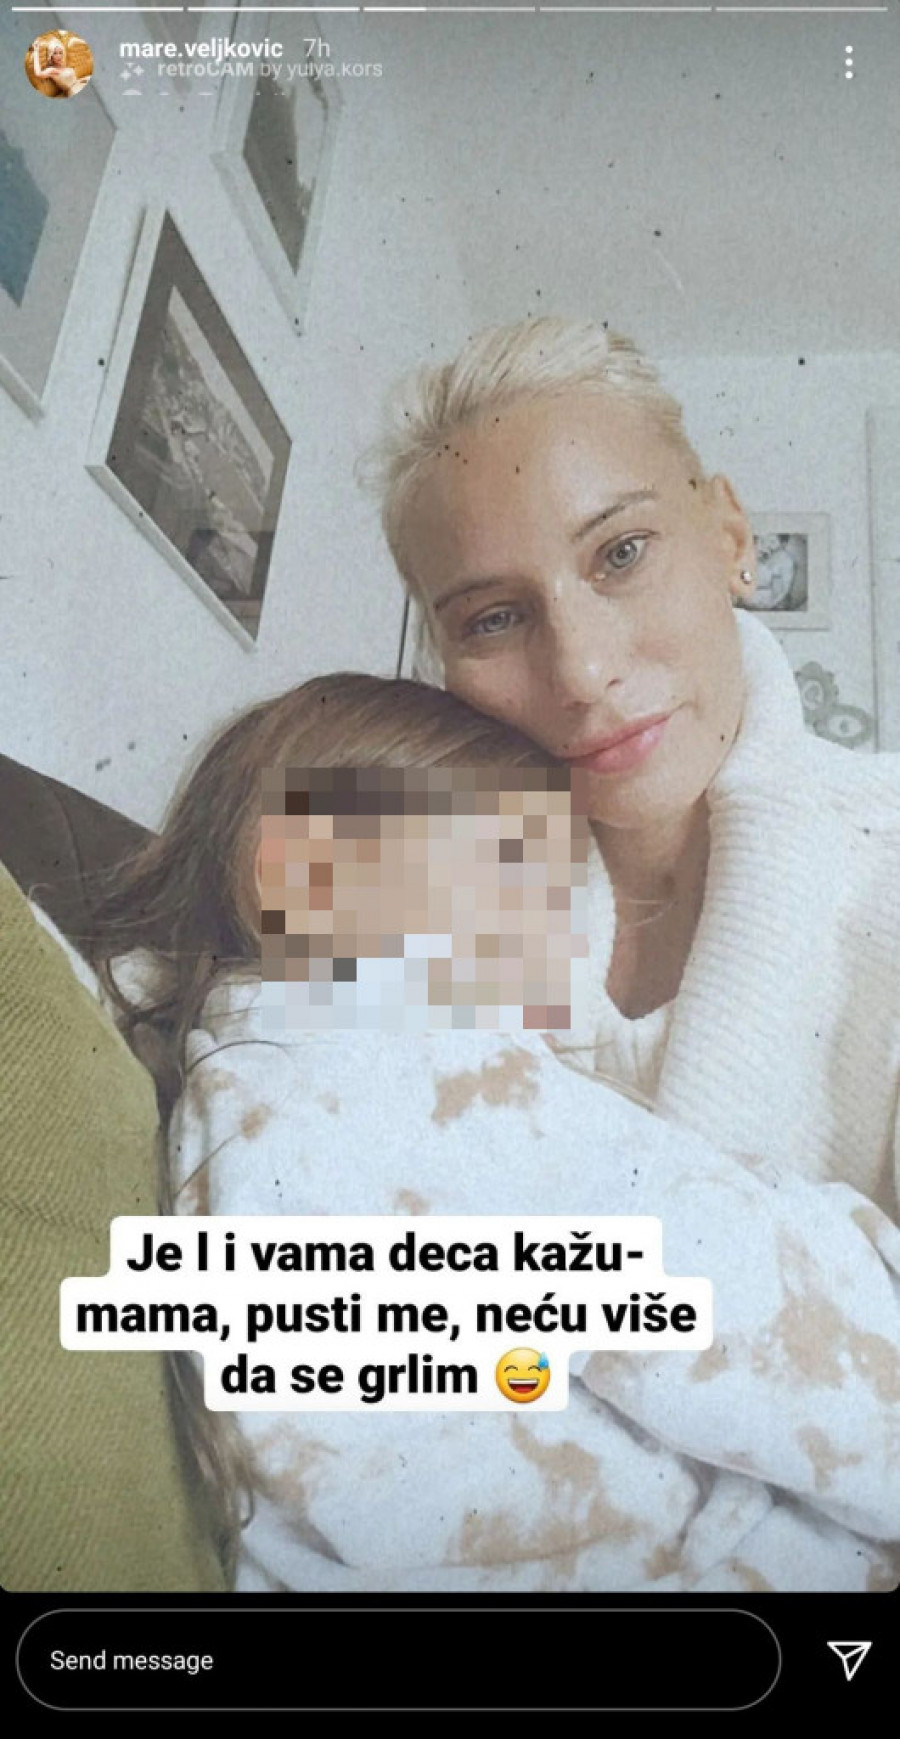 Marija Veljković Instagram screenshot